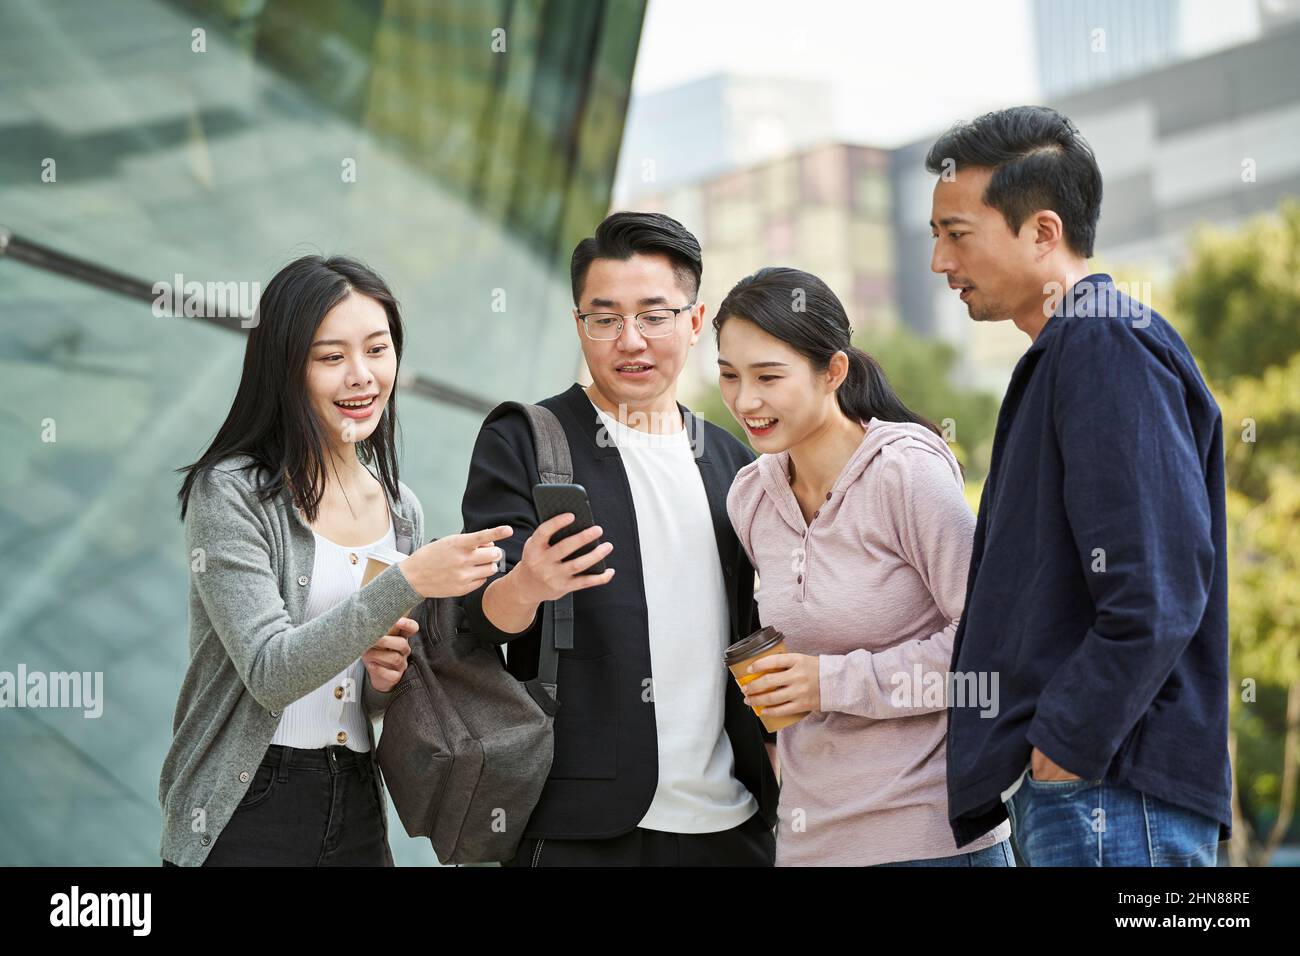 Eine Gruppe junger asiatischer Menschen, die im Freien gemeinsam das Handy angeschaut haben, glücklich und lächelnd Stockfoto